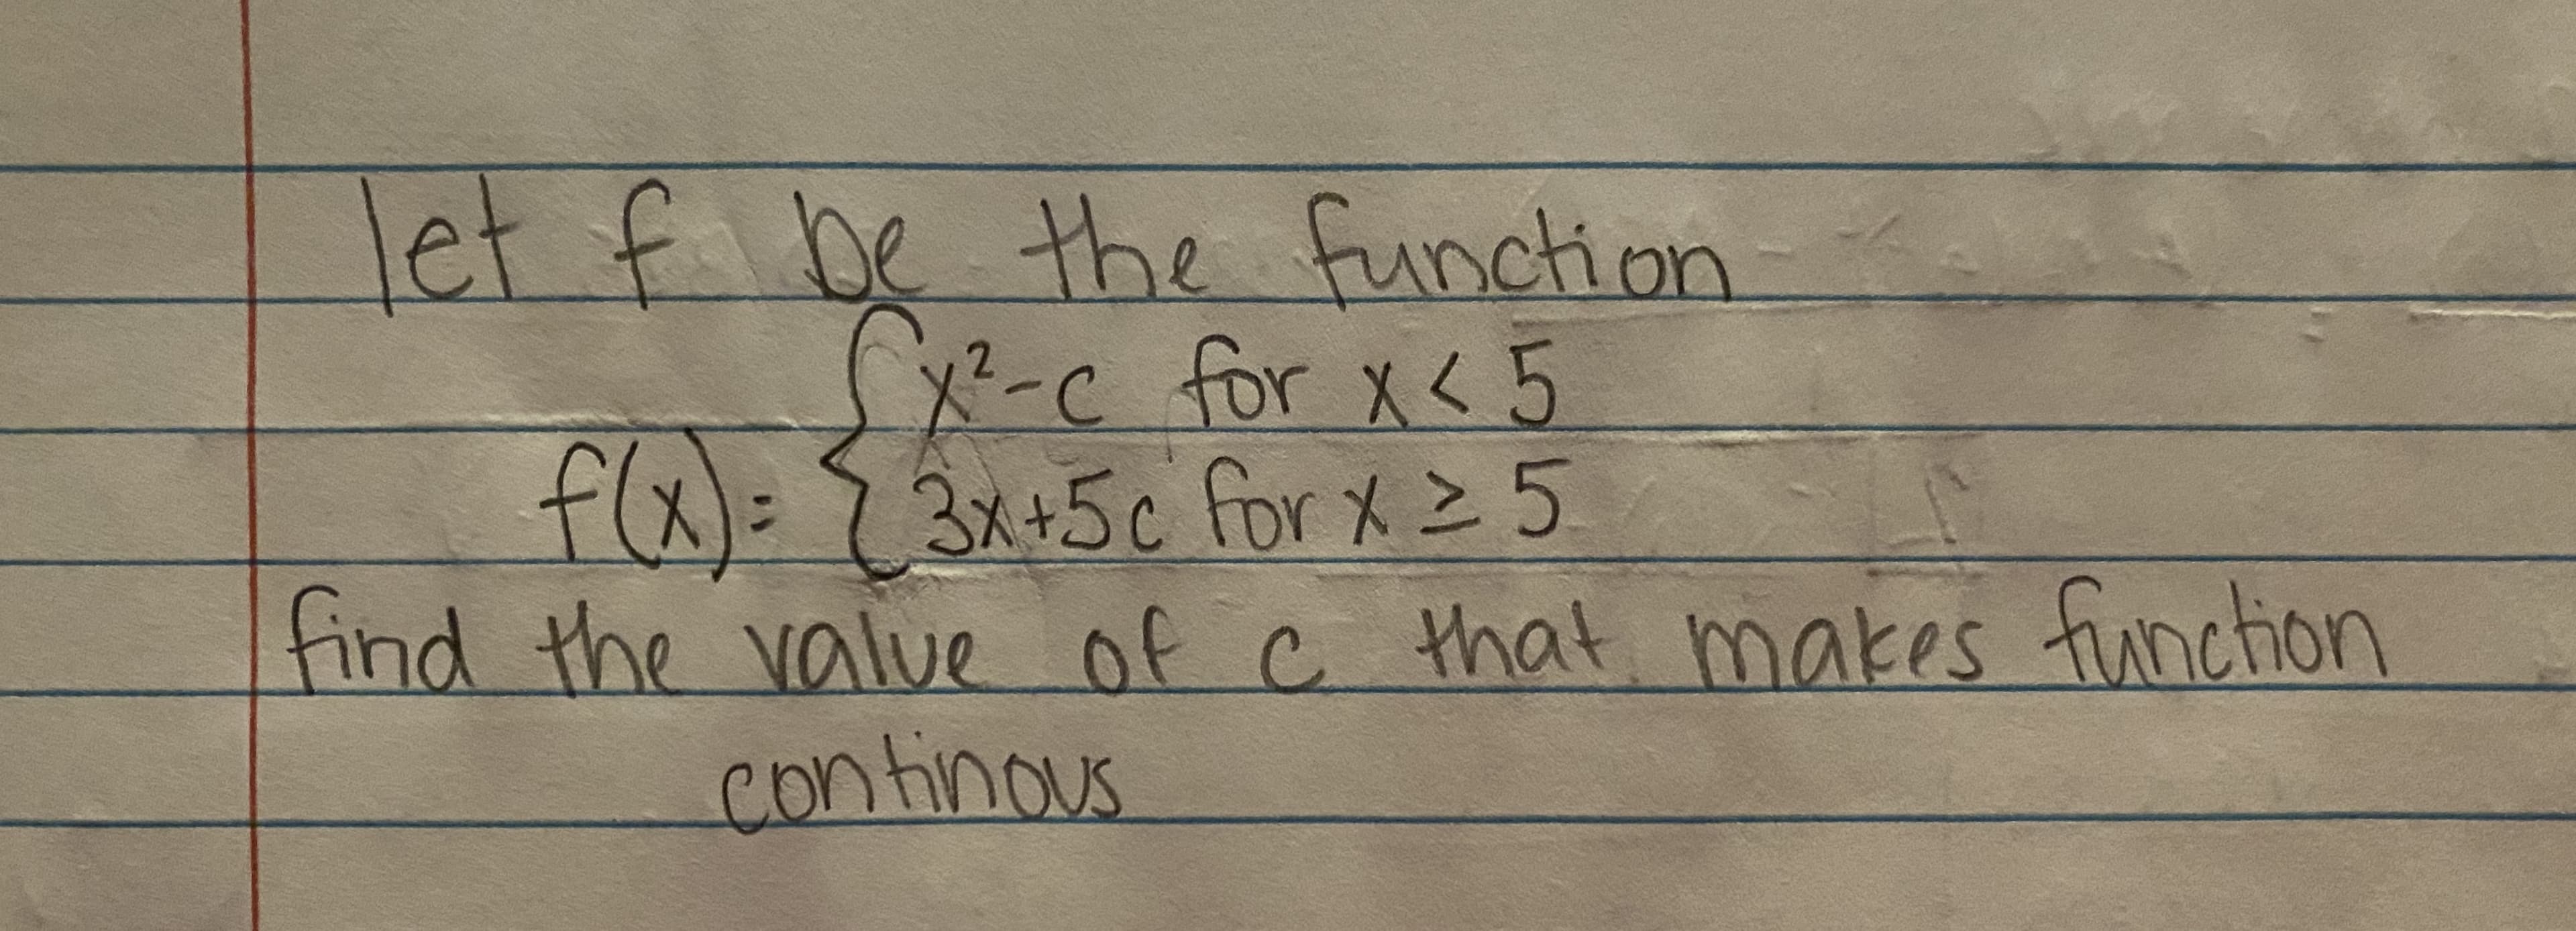 let f be the function
x²-C for x< 5
flx)=3x+5c for X Z 5
